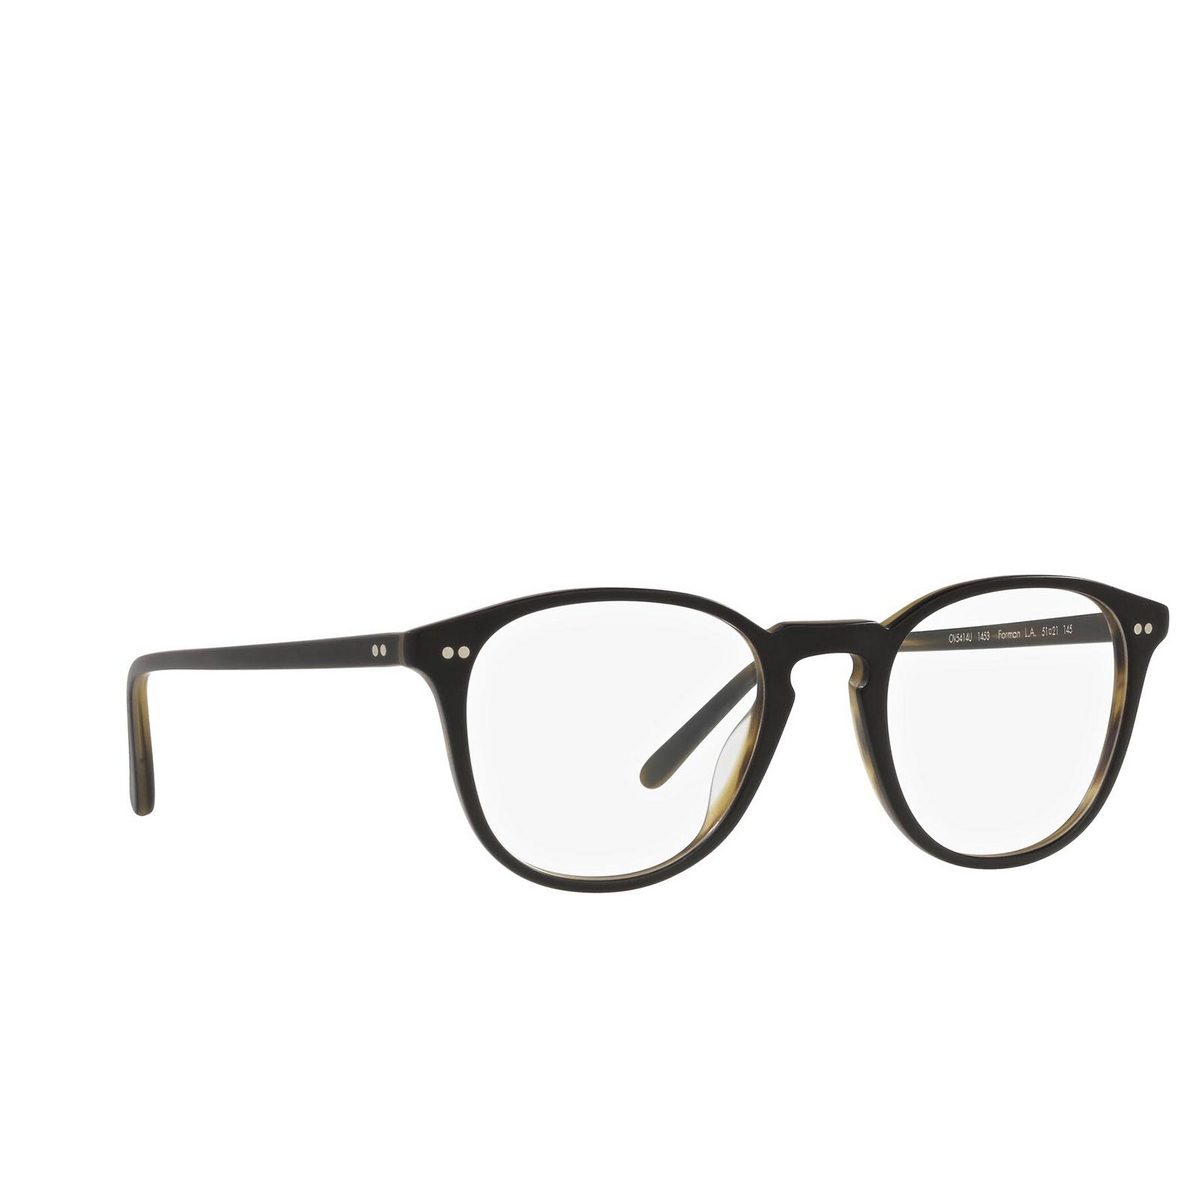 Oliver Peoples® Square Eyeglasses: OV5414U color Semi Matte Black / Olive Tortoise 1453 - 2/3.